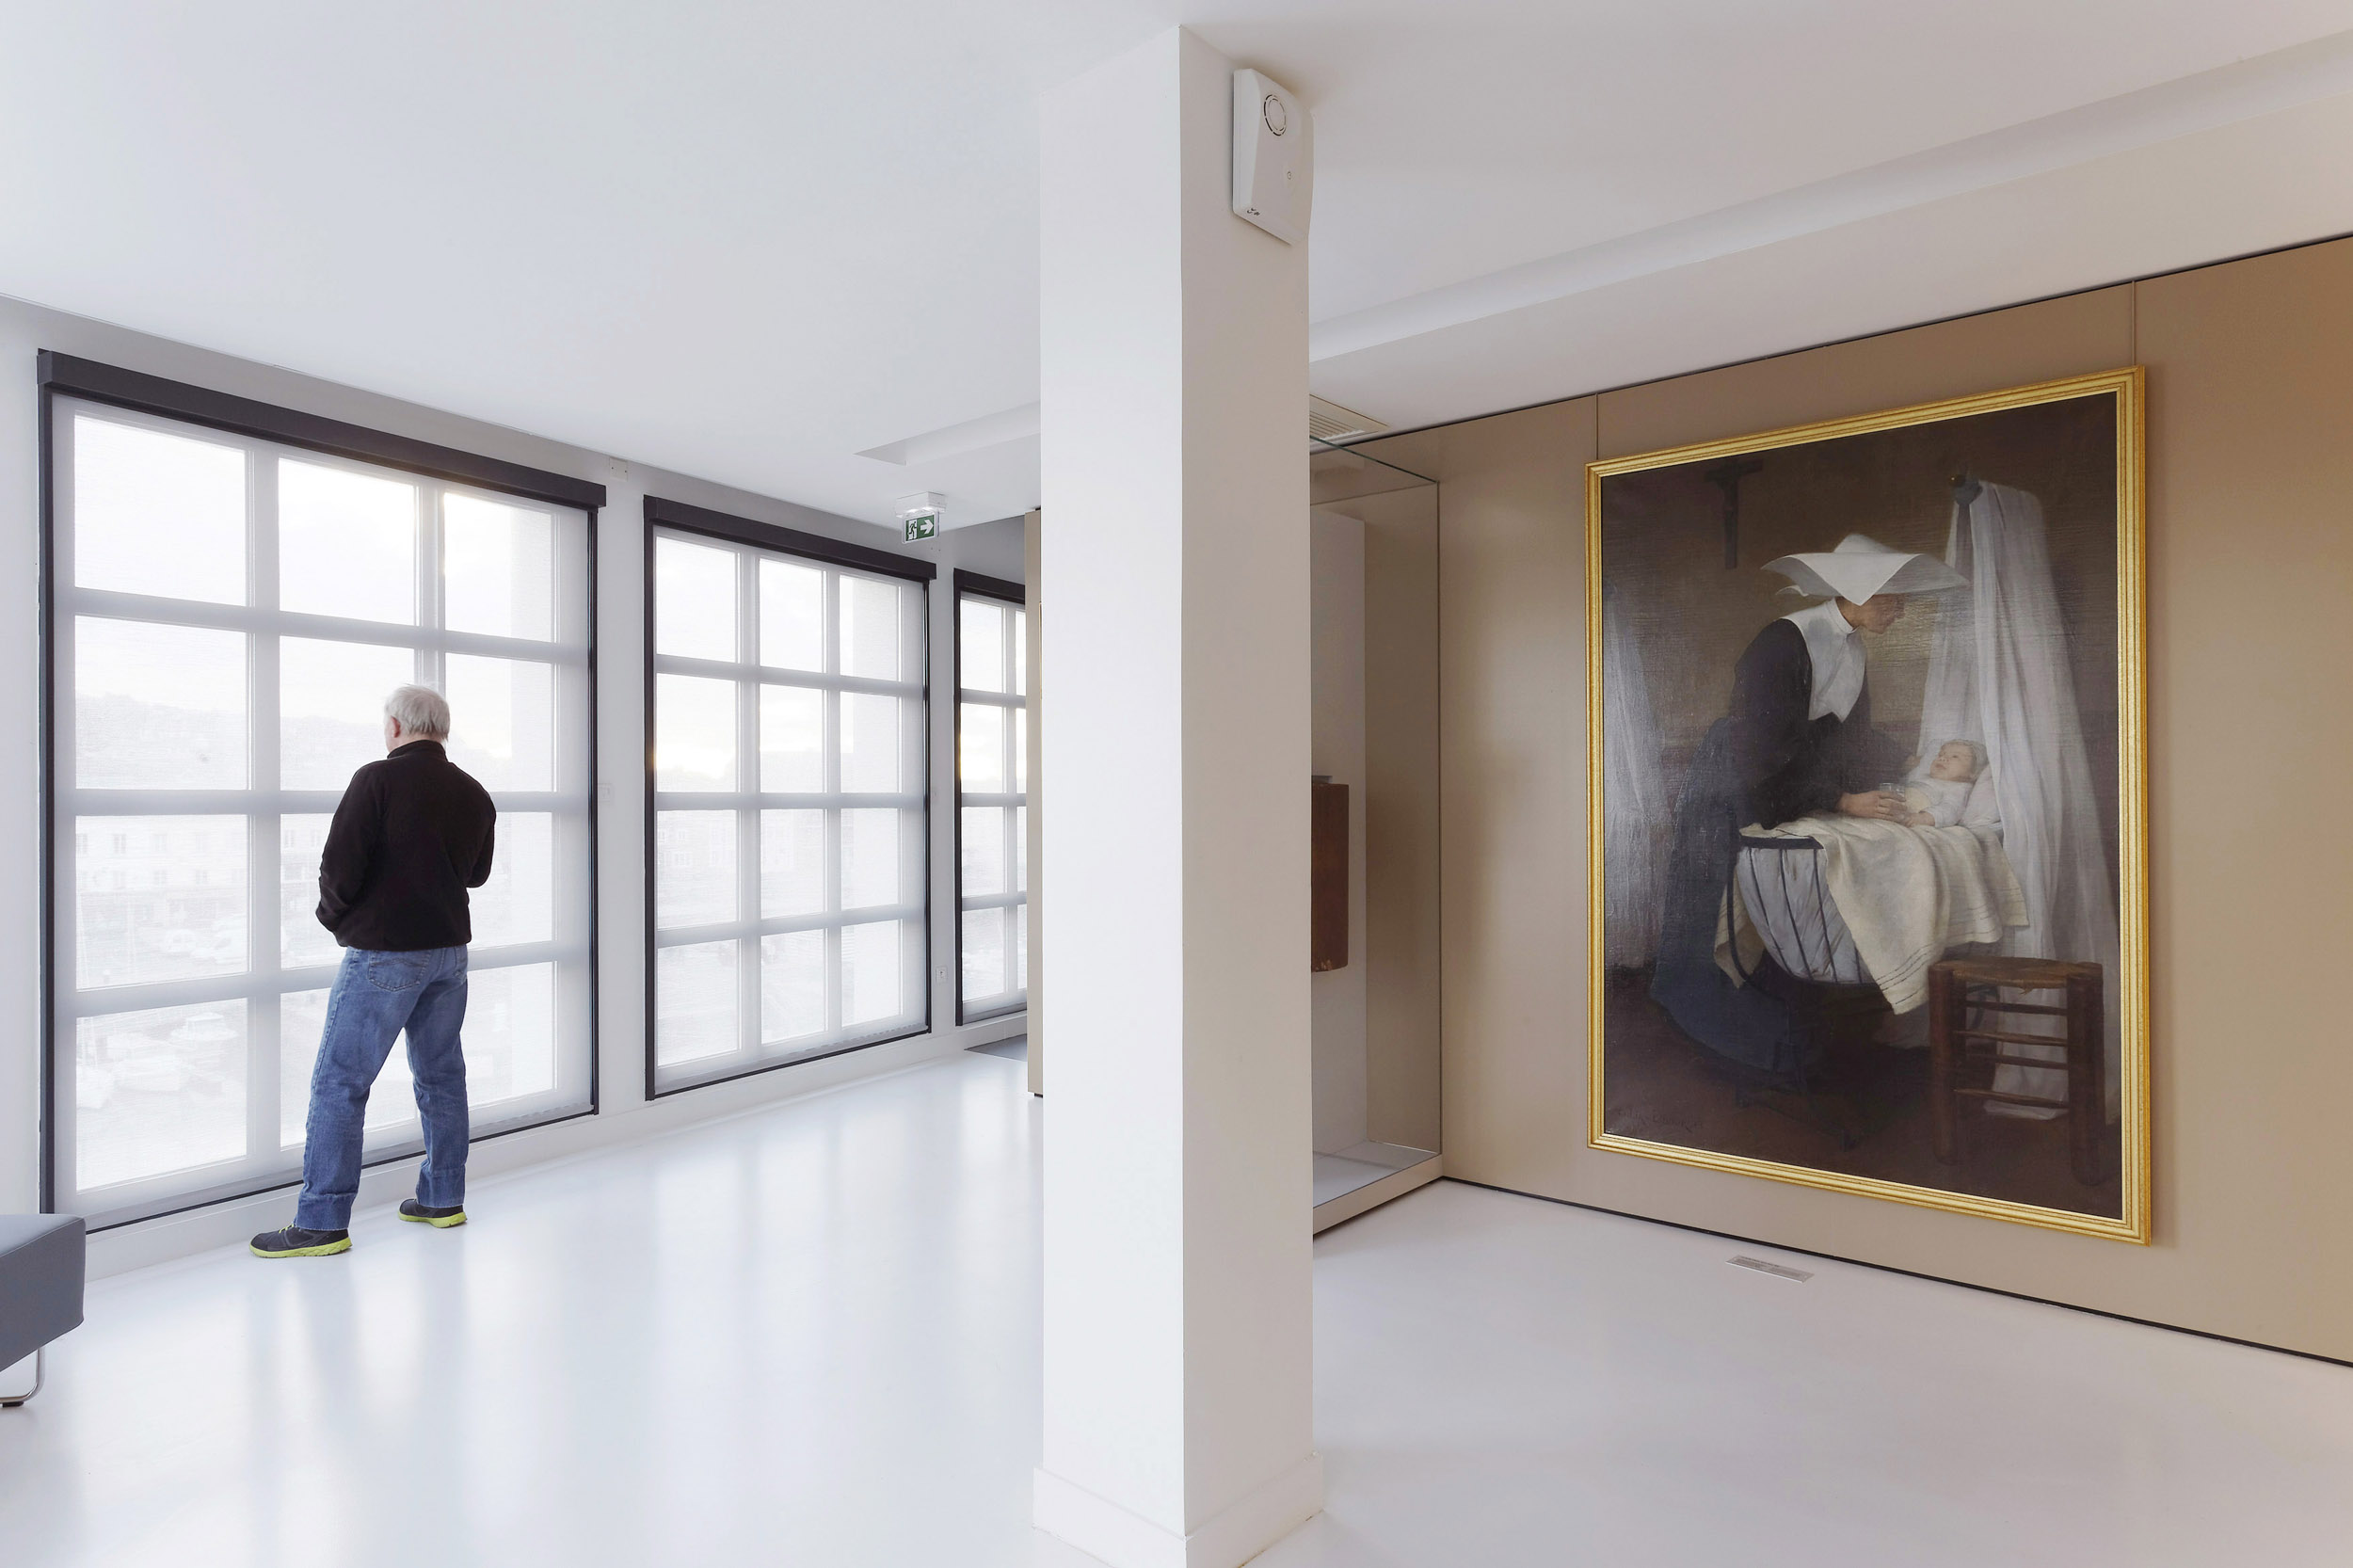 BASALT ARCHITECTURE | MUSEE DES PECHERIES FECAMP | Daniel MOULINET